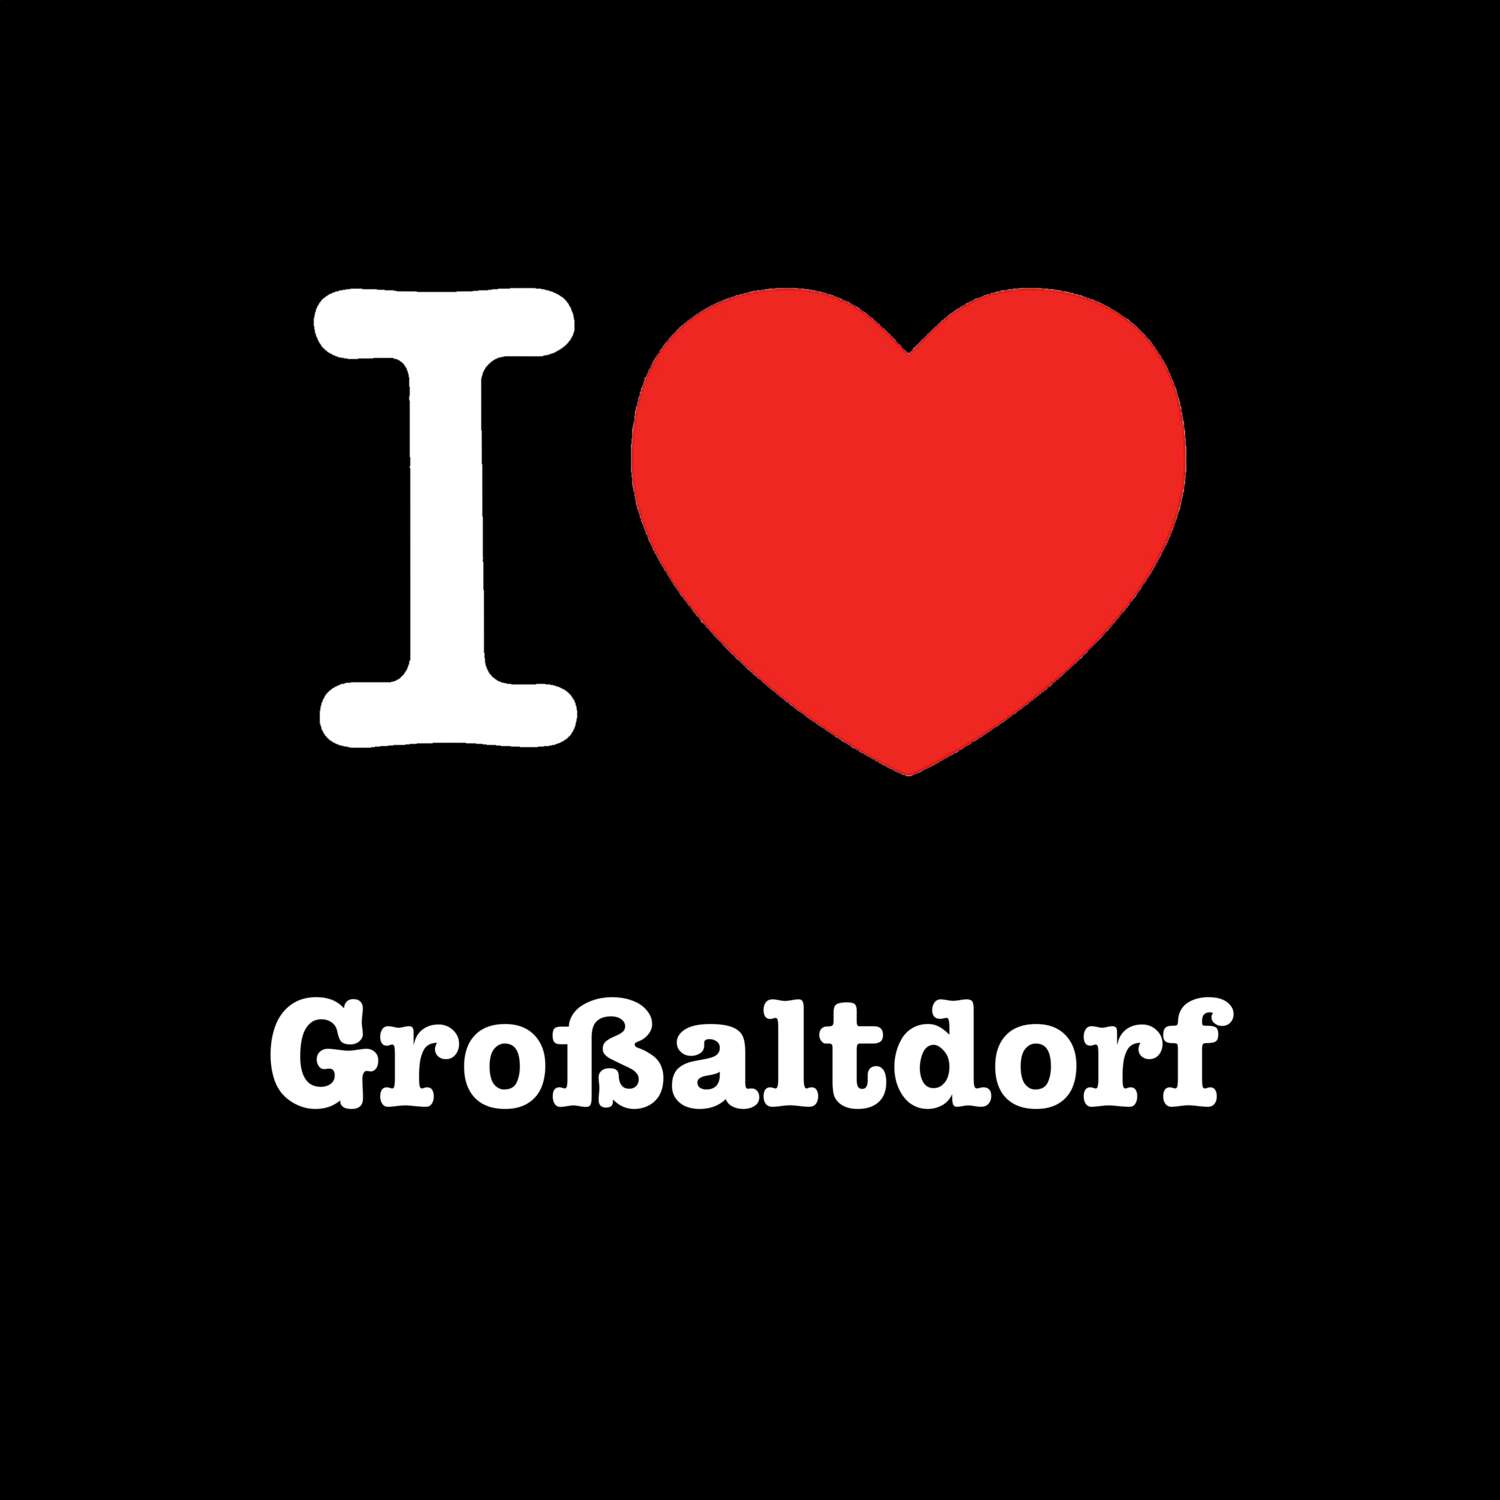 Großaltdorf T-Shirt »I love«